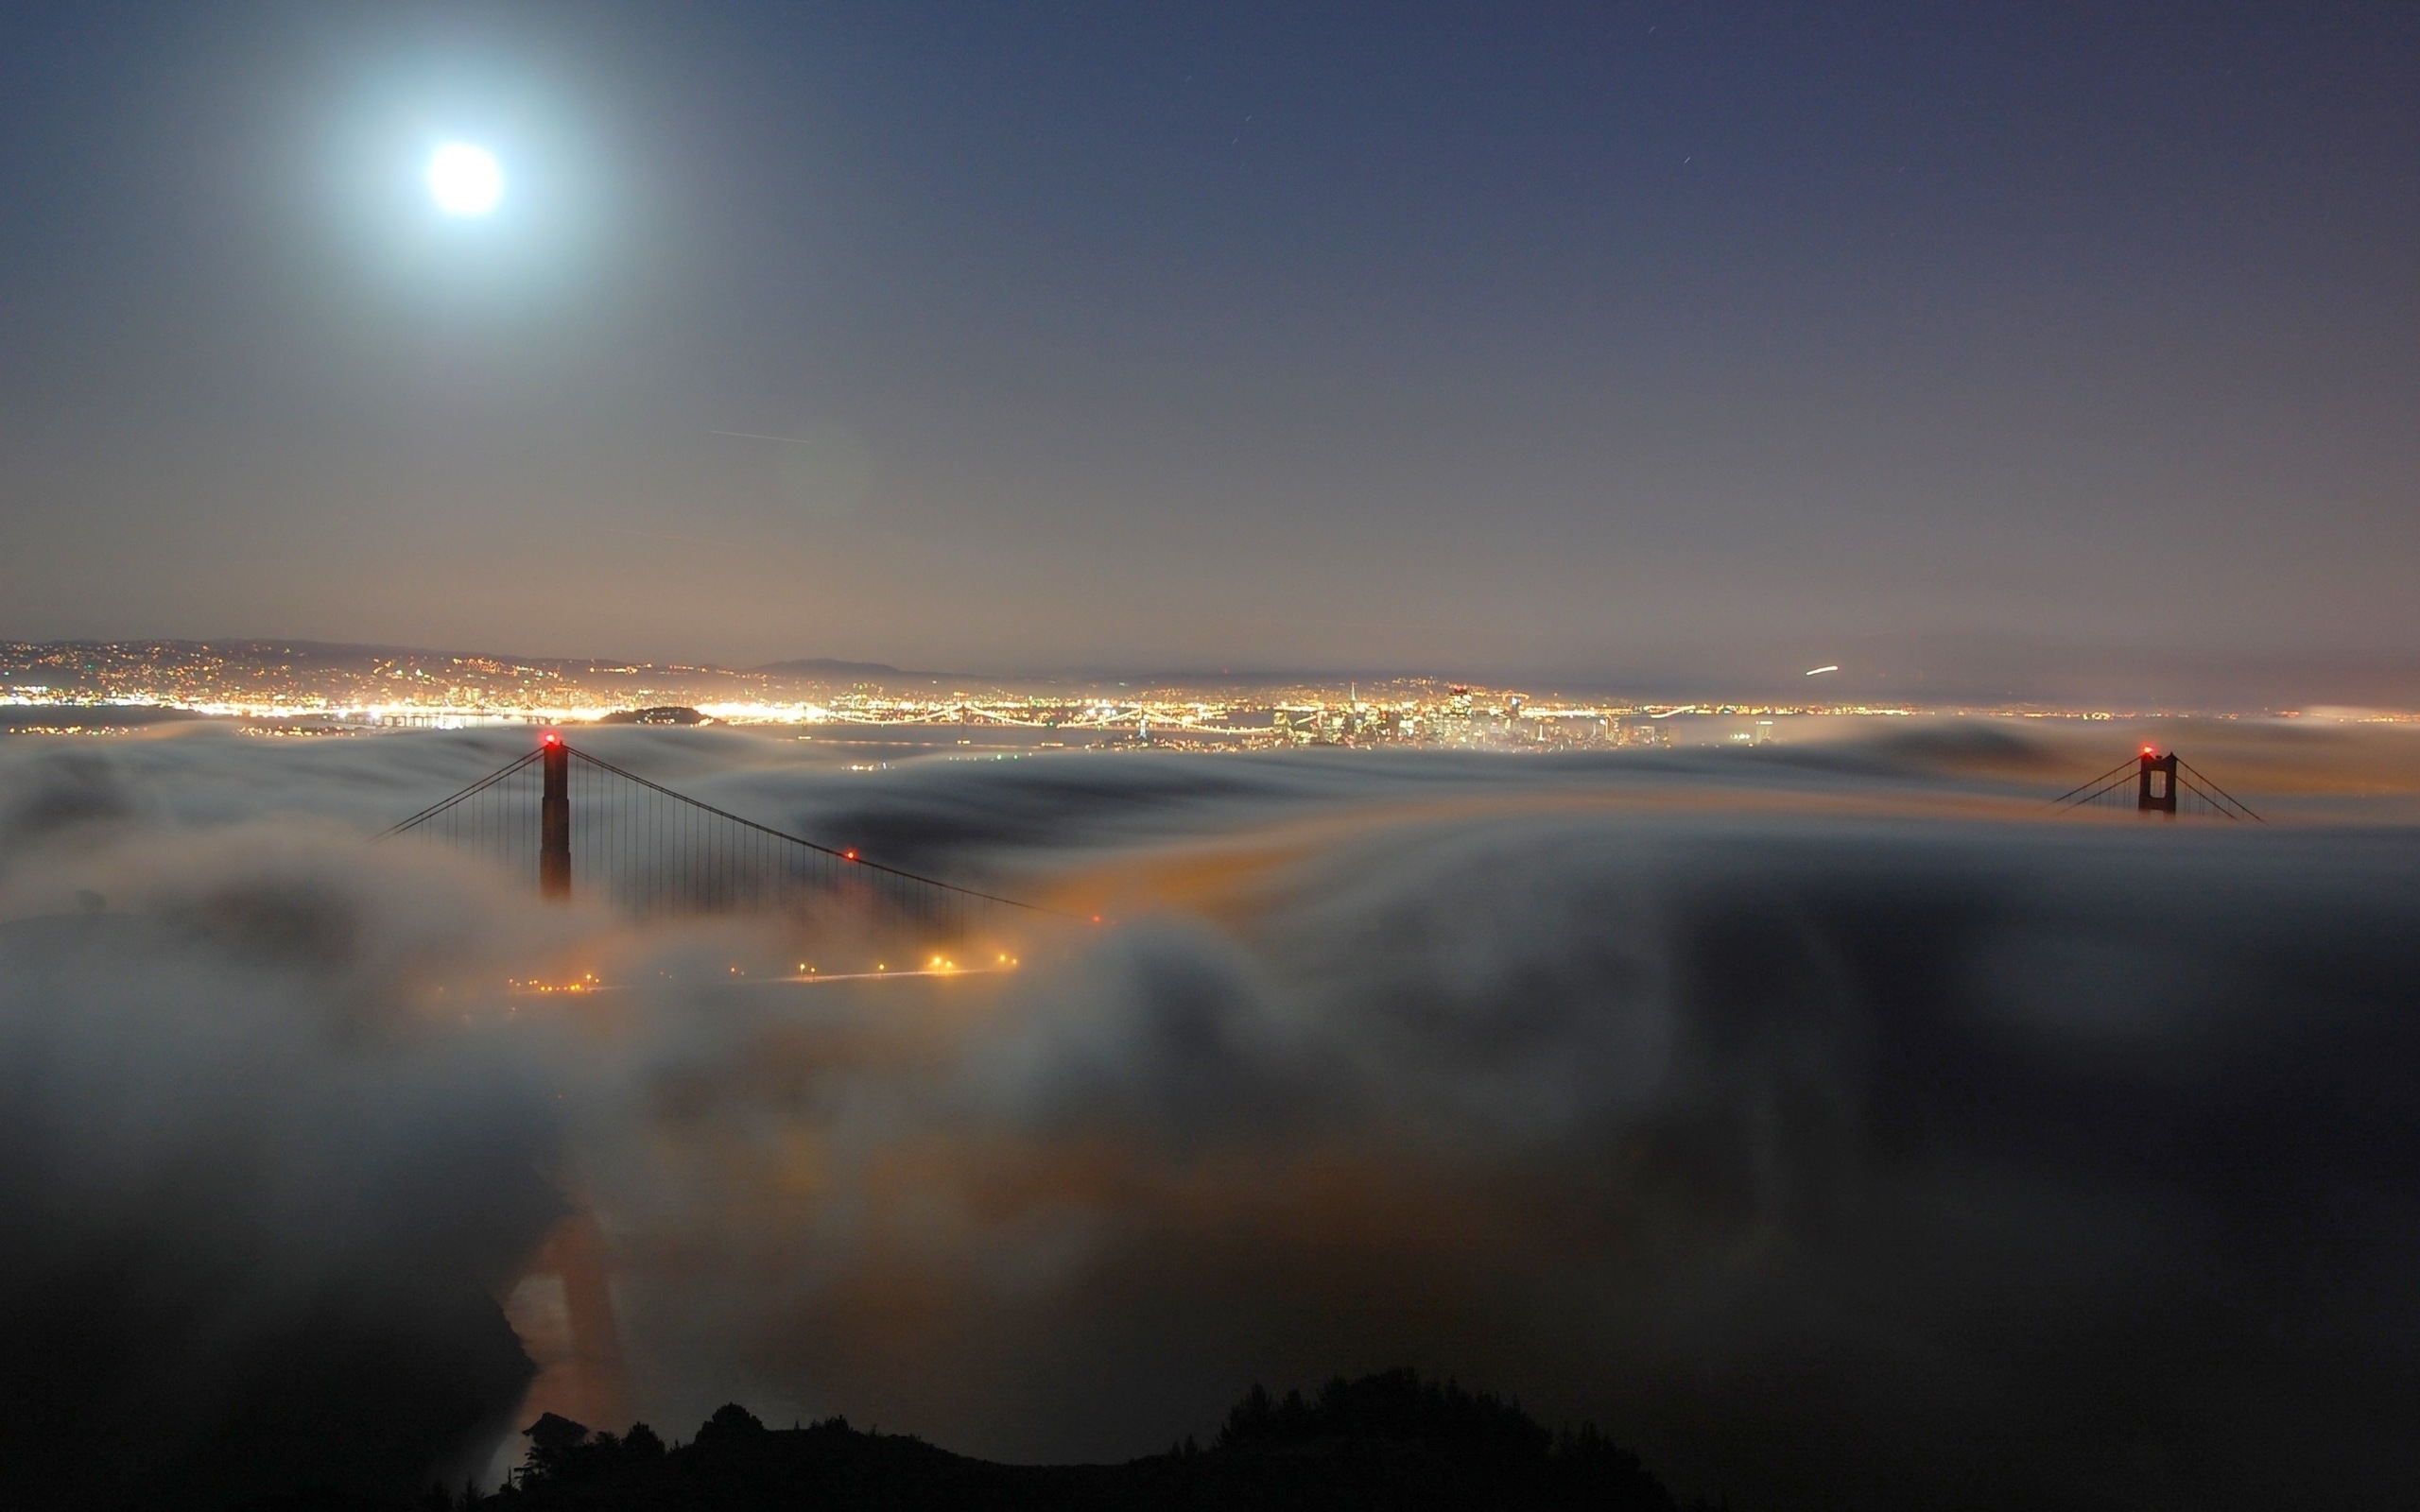 3d обои Cан-франциско, золотые ворота / San Francisco, Golden gate, bridge, ночной вид на мост под облаками  ночь # 67404